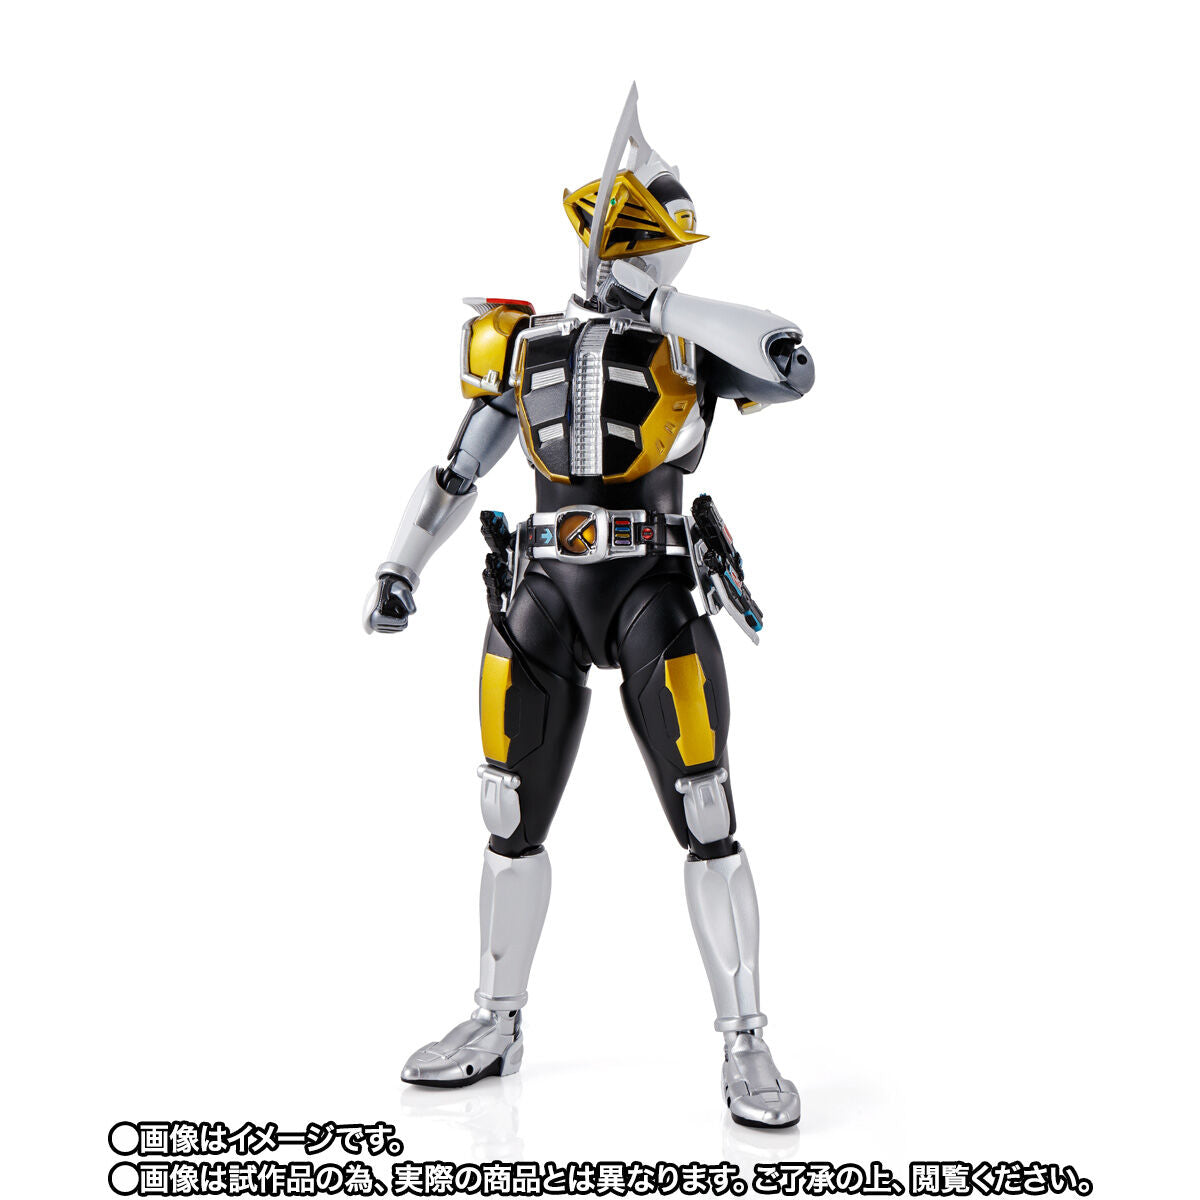 SH Figuarts Kamen Rider Den-O Rod Form / Ax Form